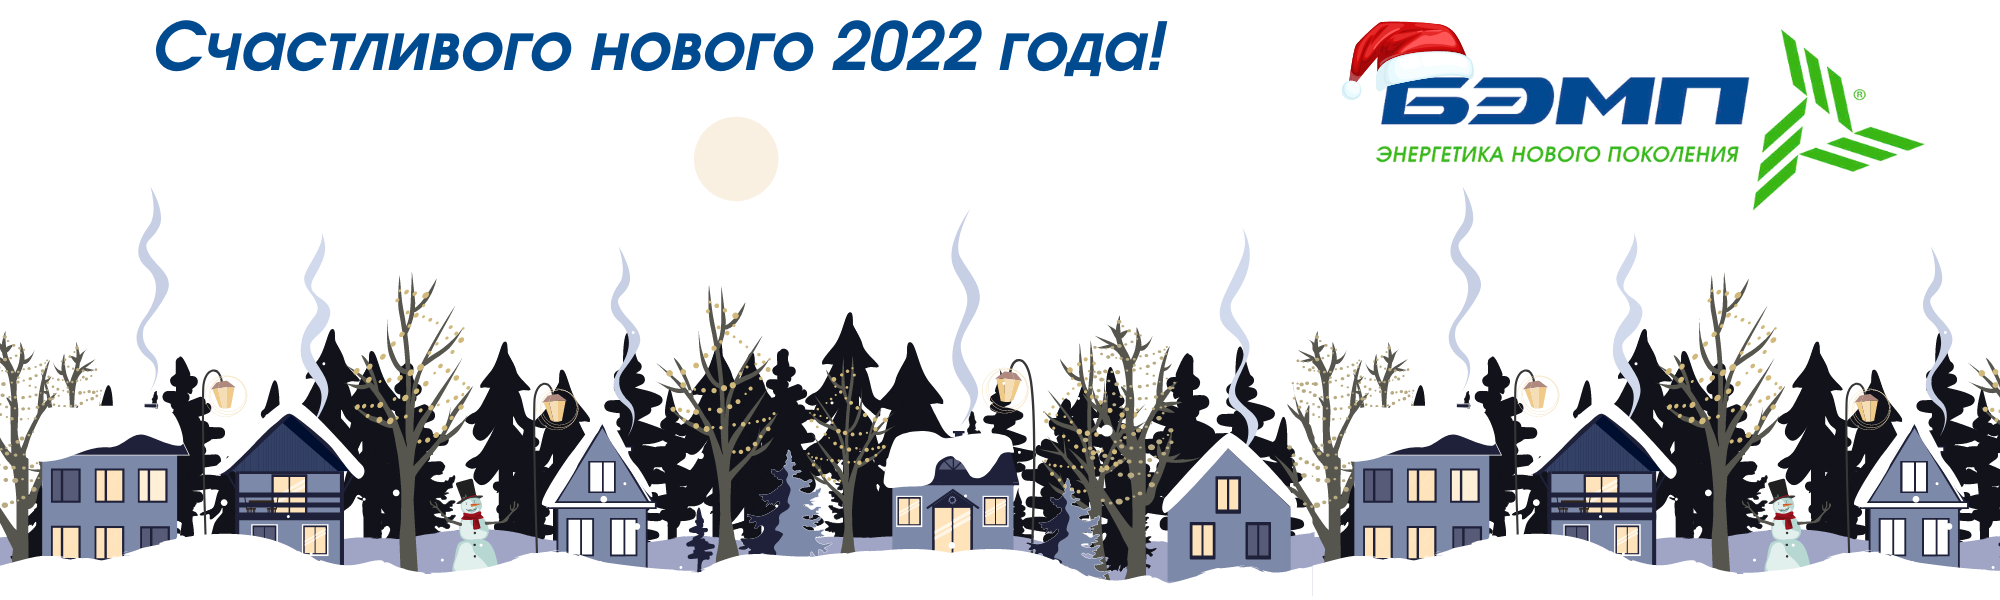 Счастливого нового 2022 года с bemp ru